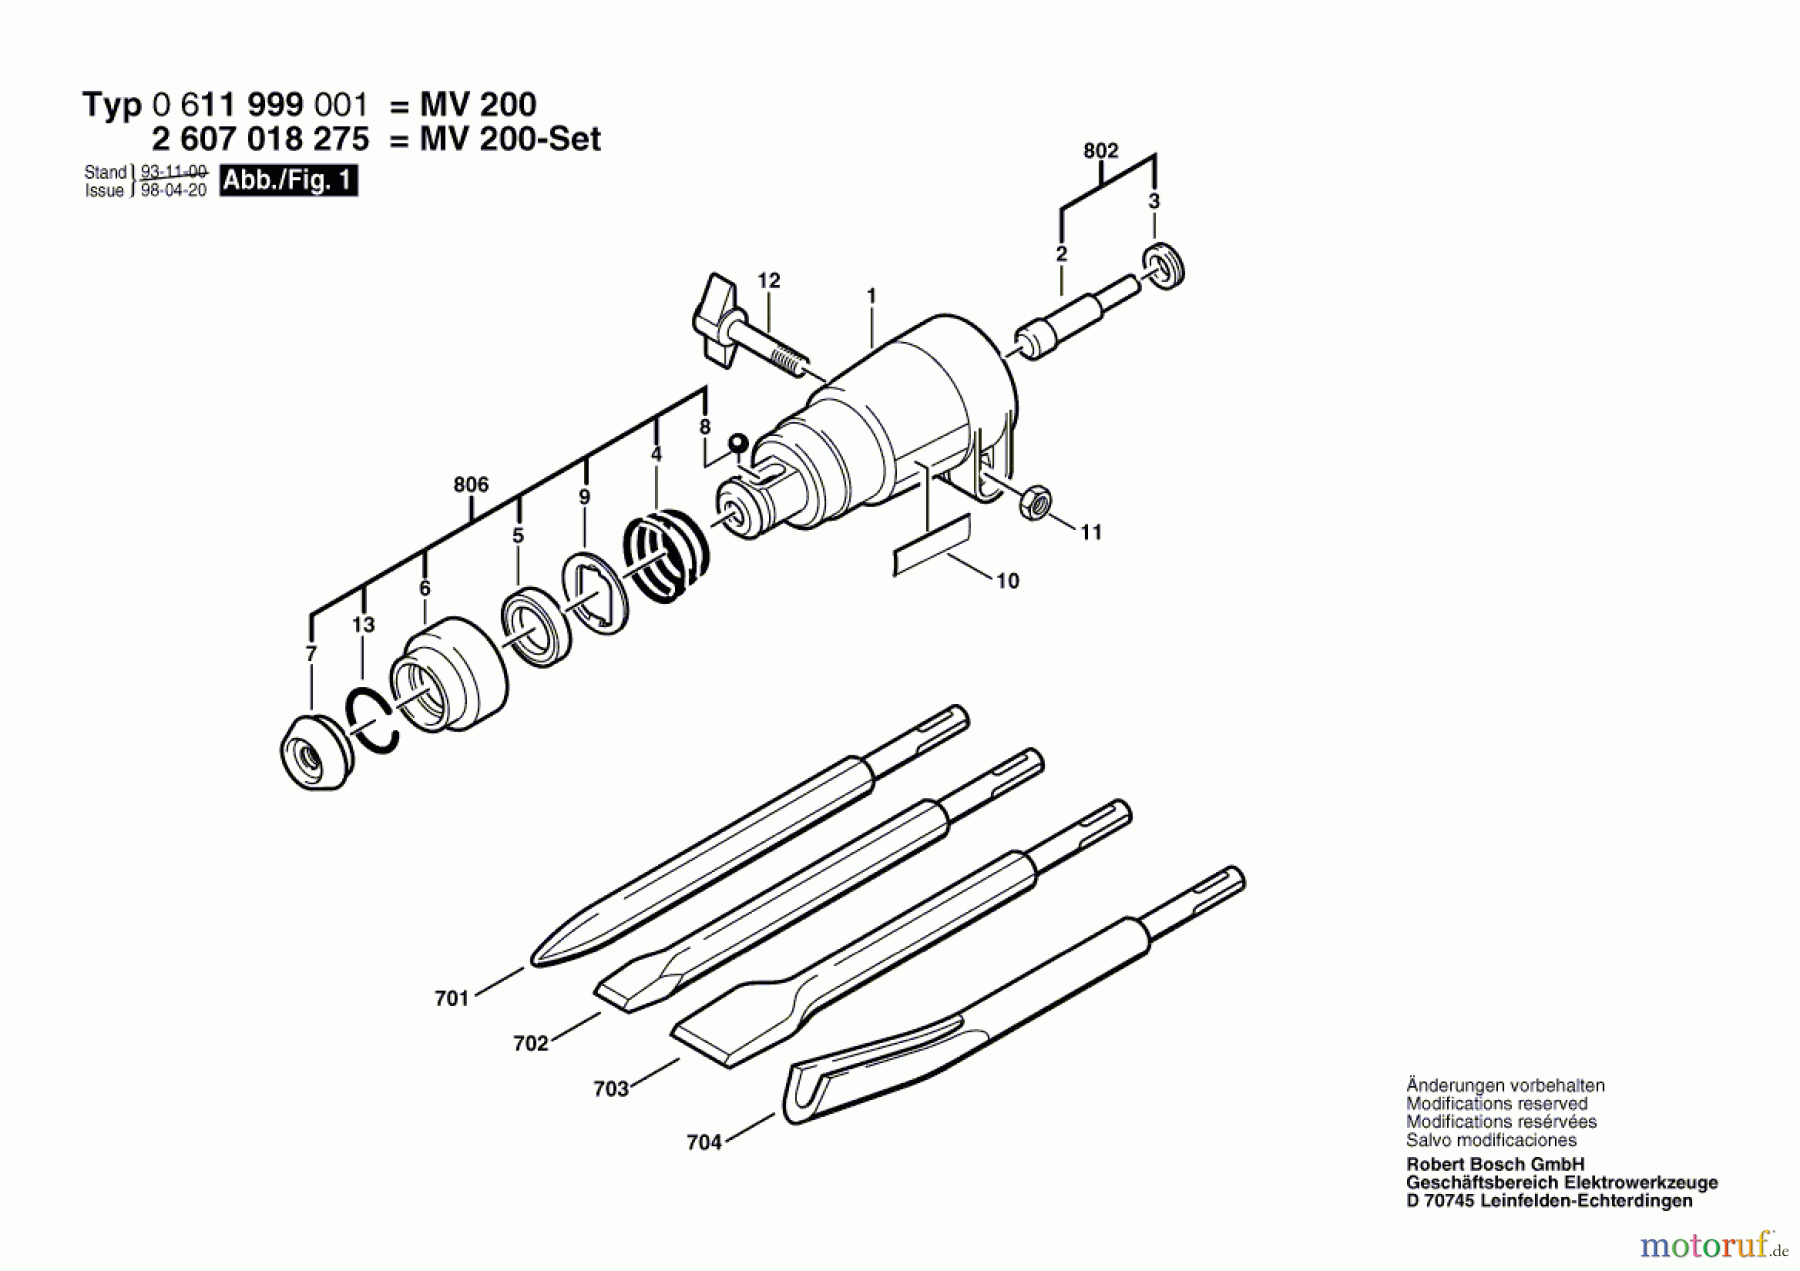  Bosch Werkzeug Meisselvorsatz MV 200 Seite 1